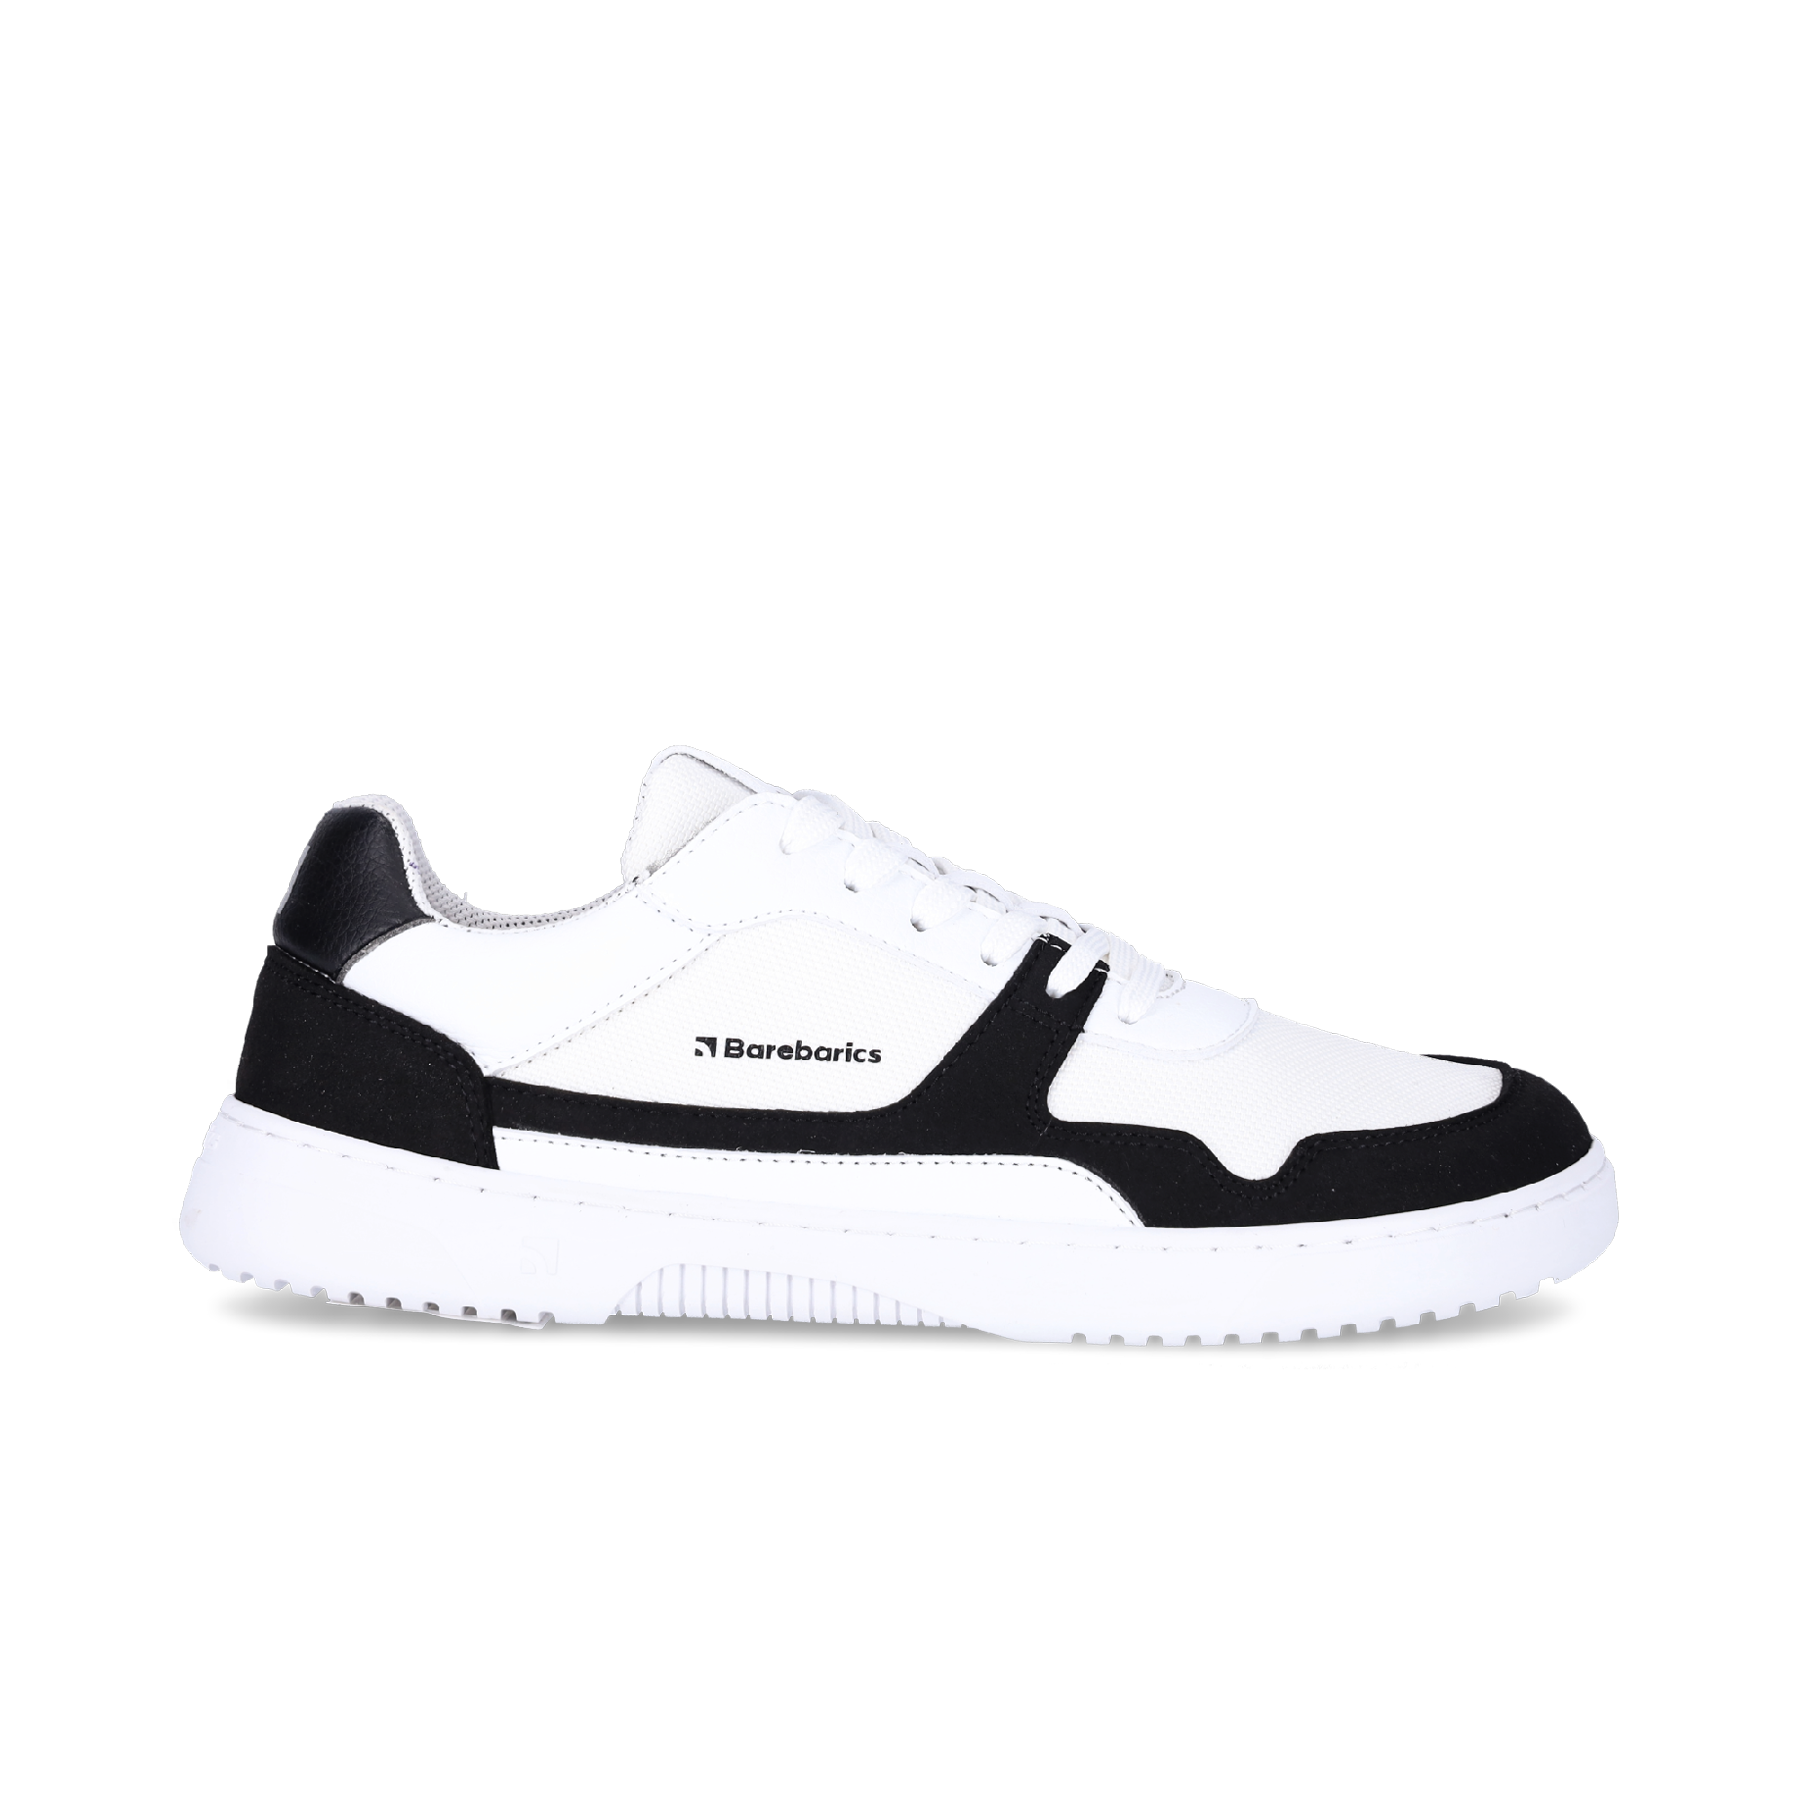 Barefoot Sneakers Barebarics - Zing - White & Black | Barebarics